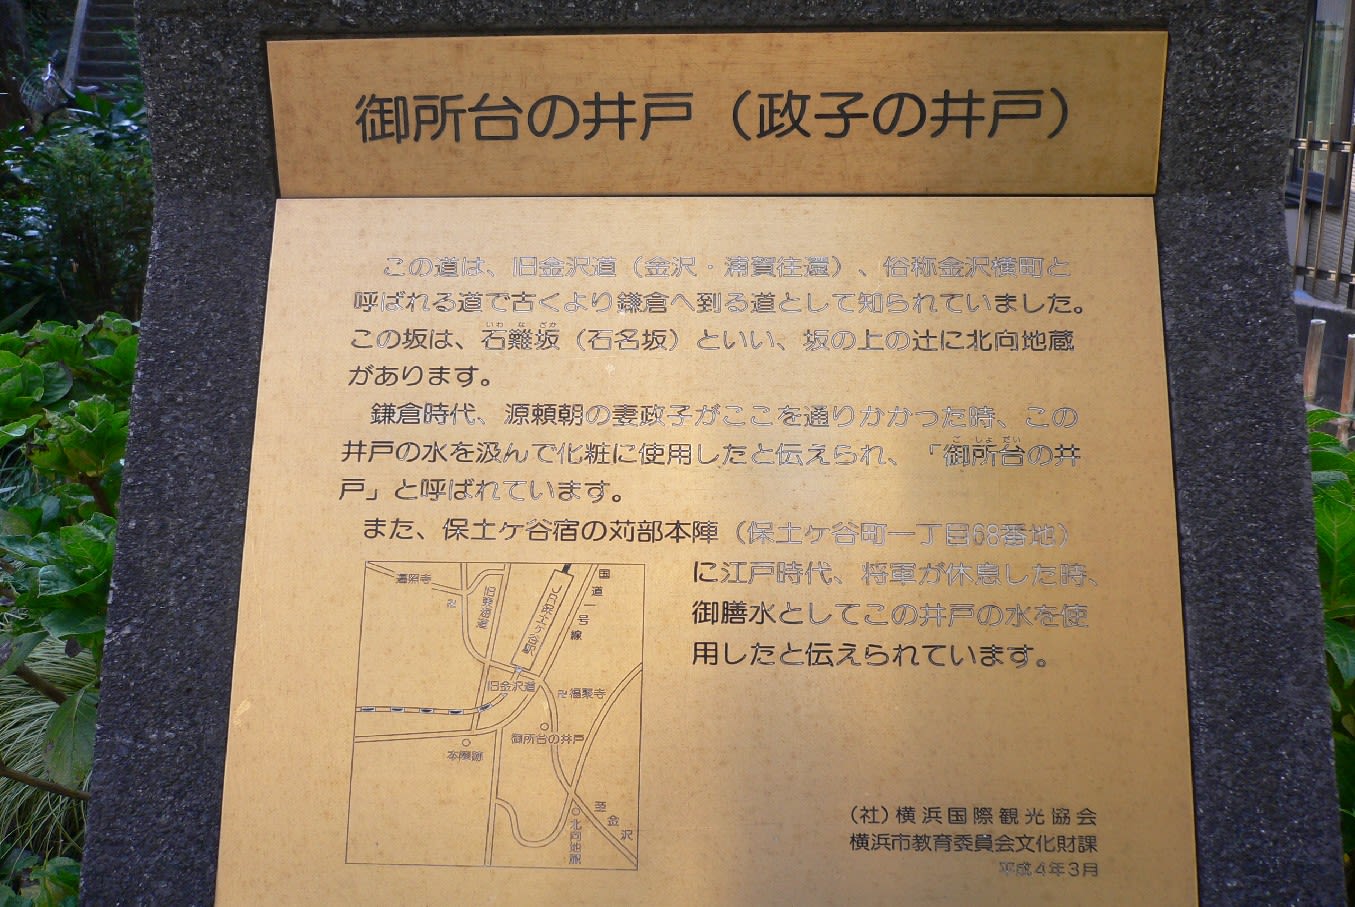 横浜岩井郵便局の風景印 - 風景印集めと日々の散策写真日記